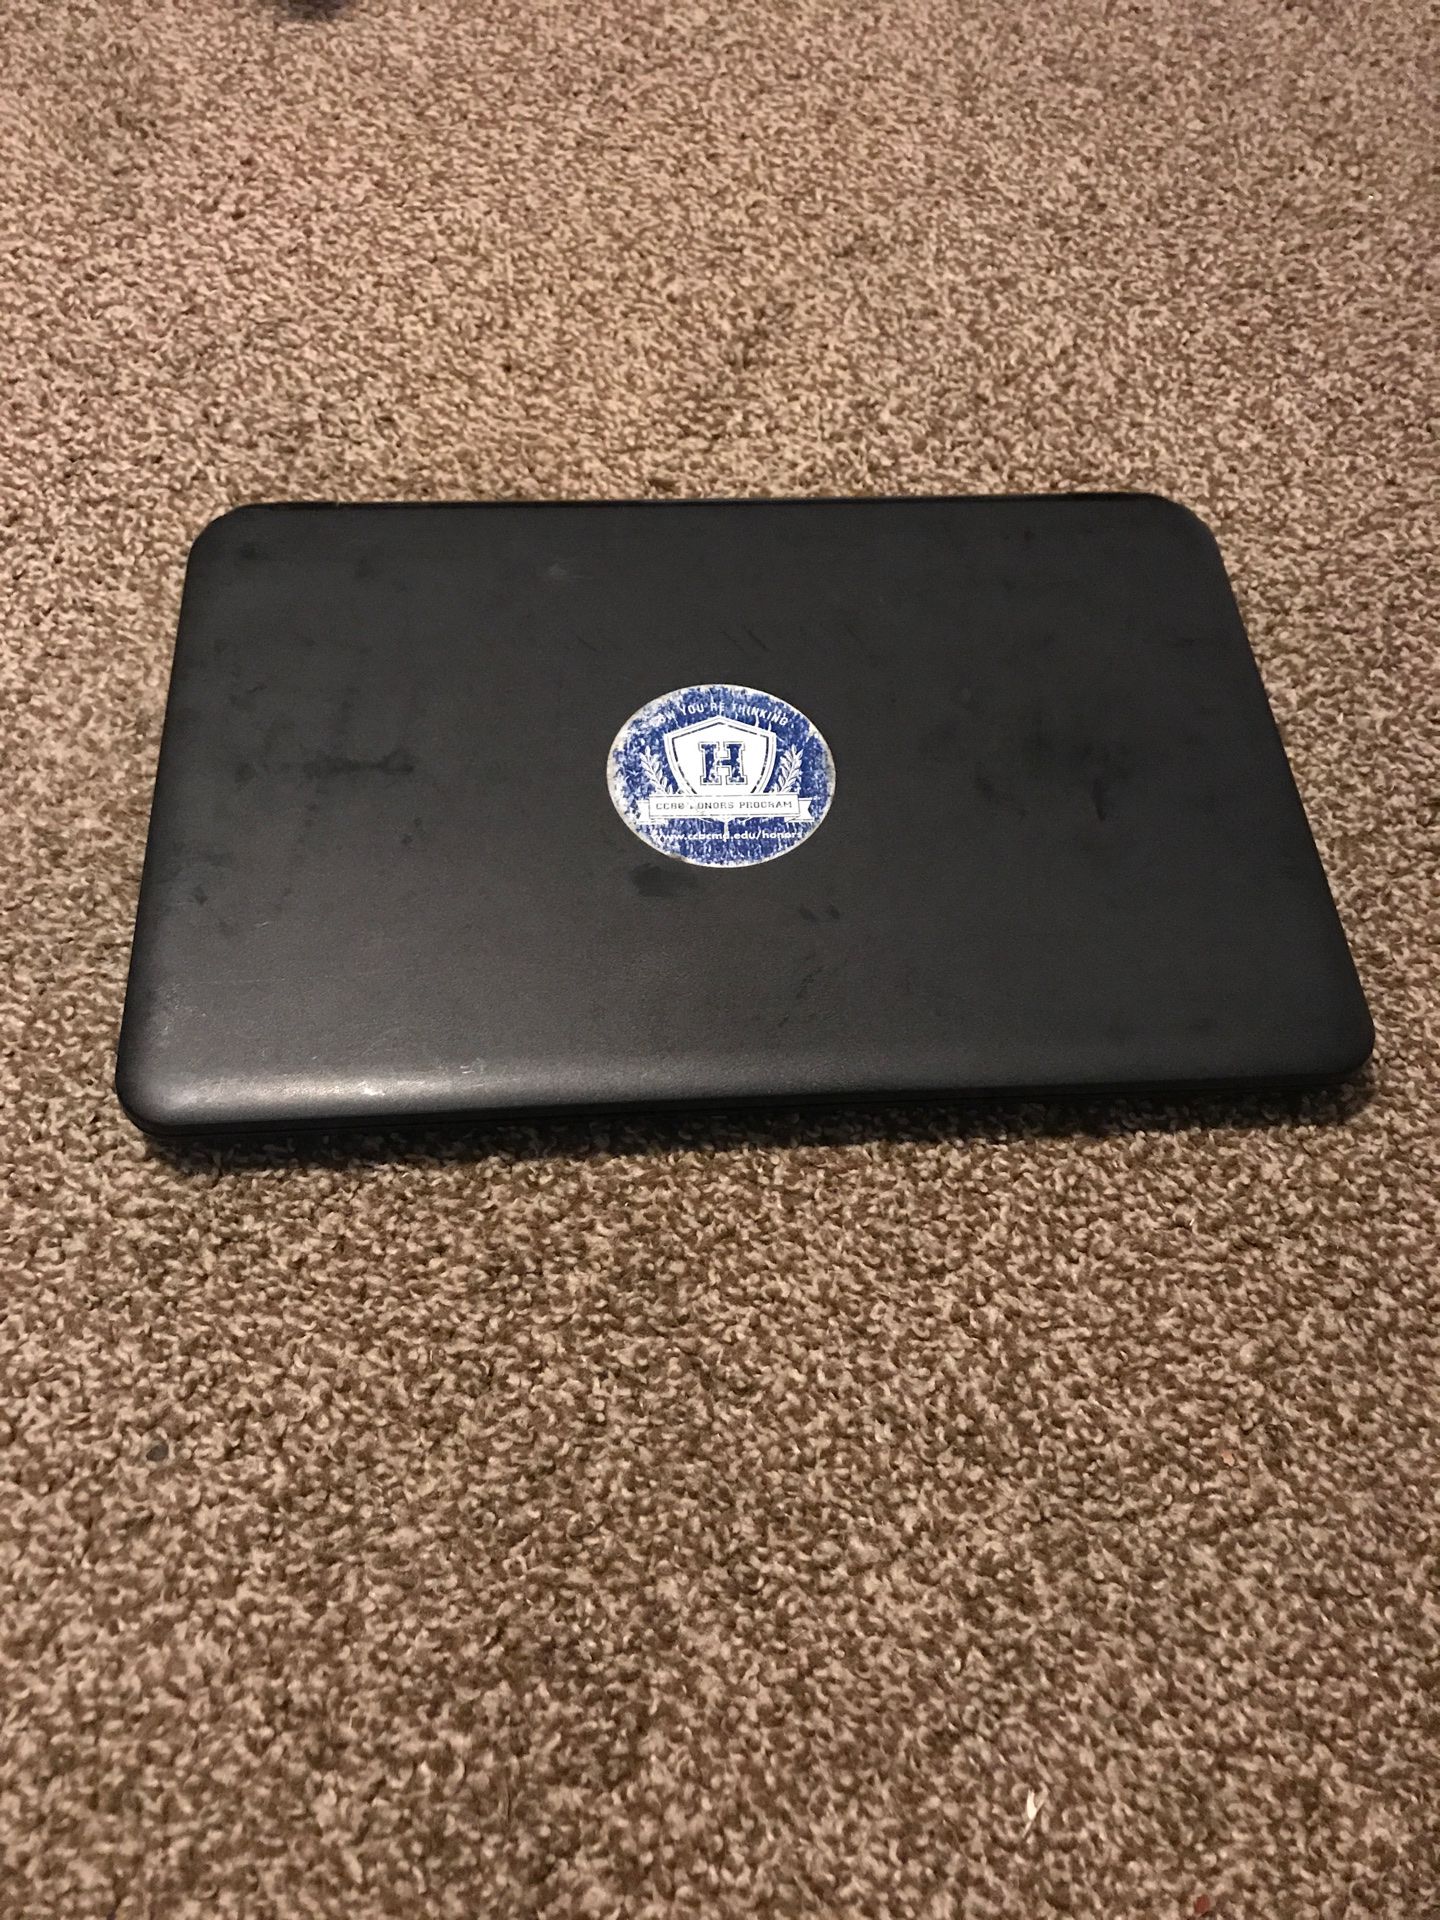 HP 15-g059wm TouchSmart Notebook PC